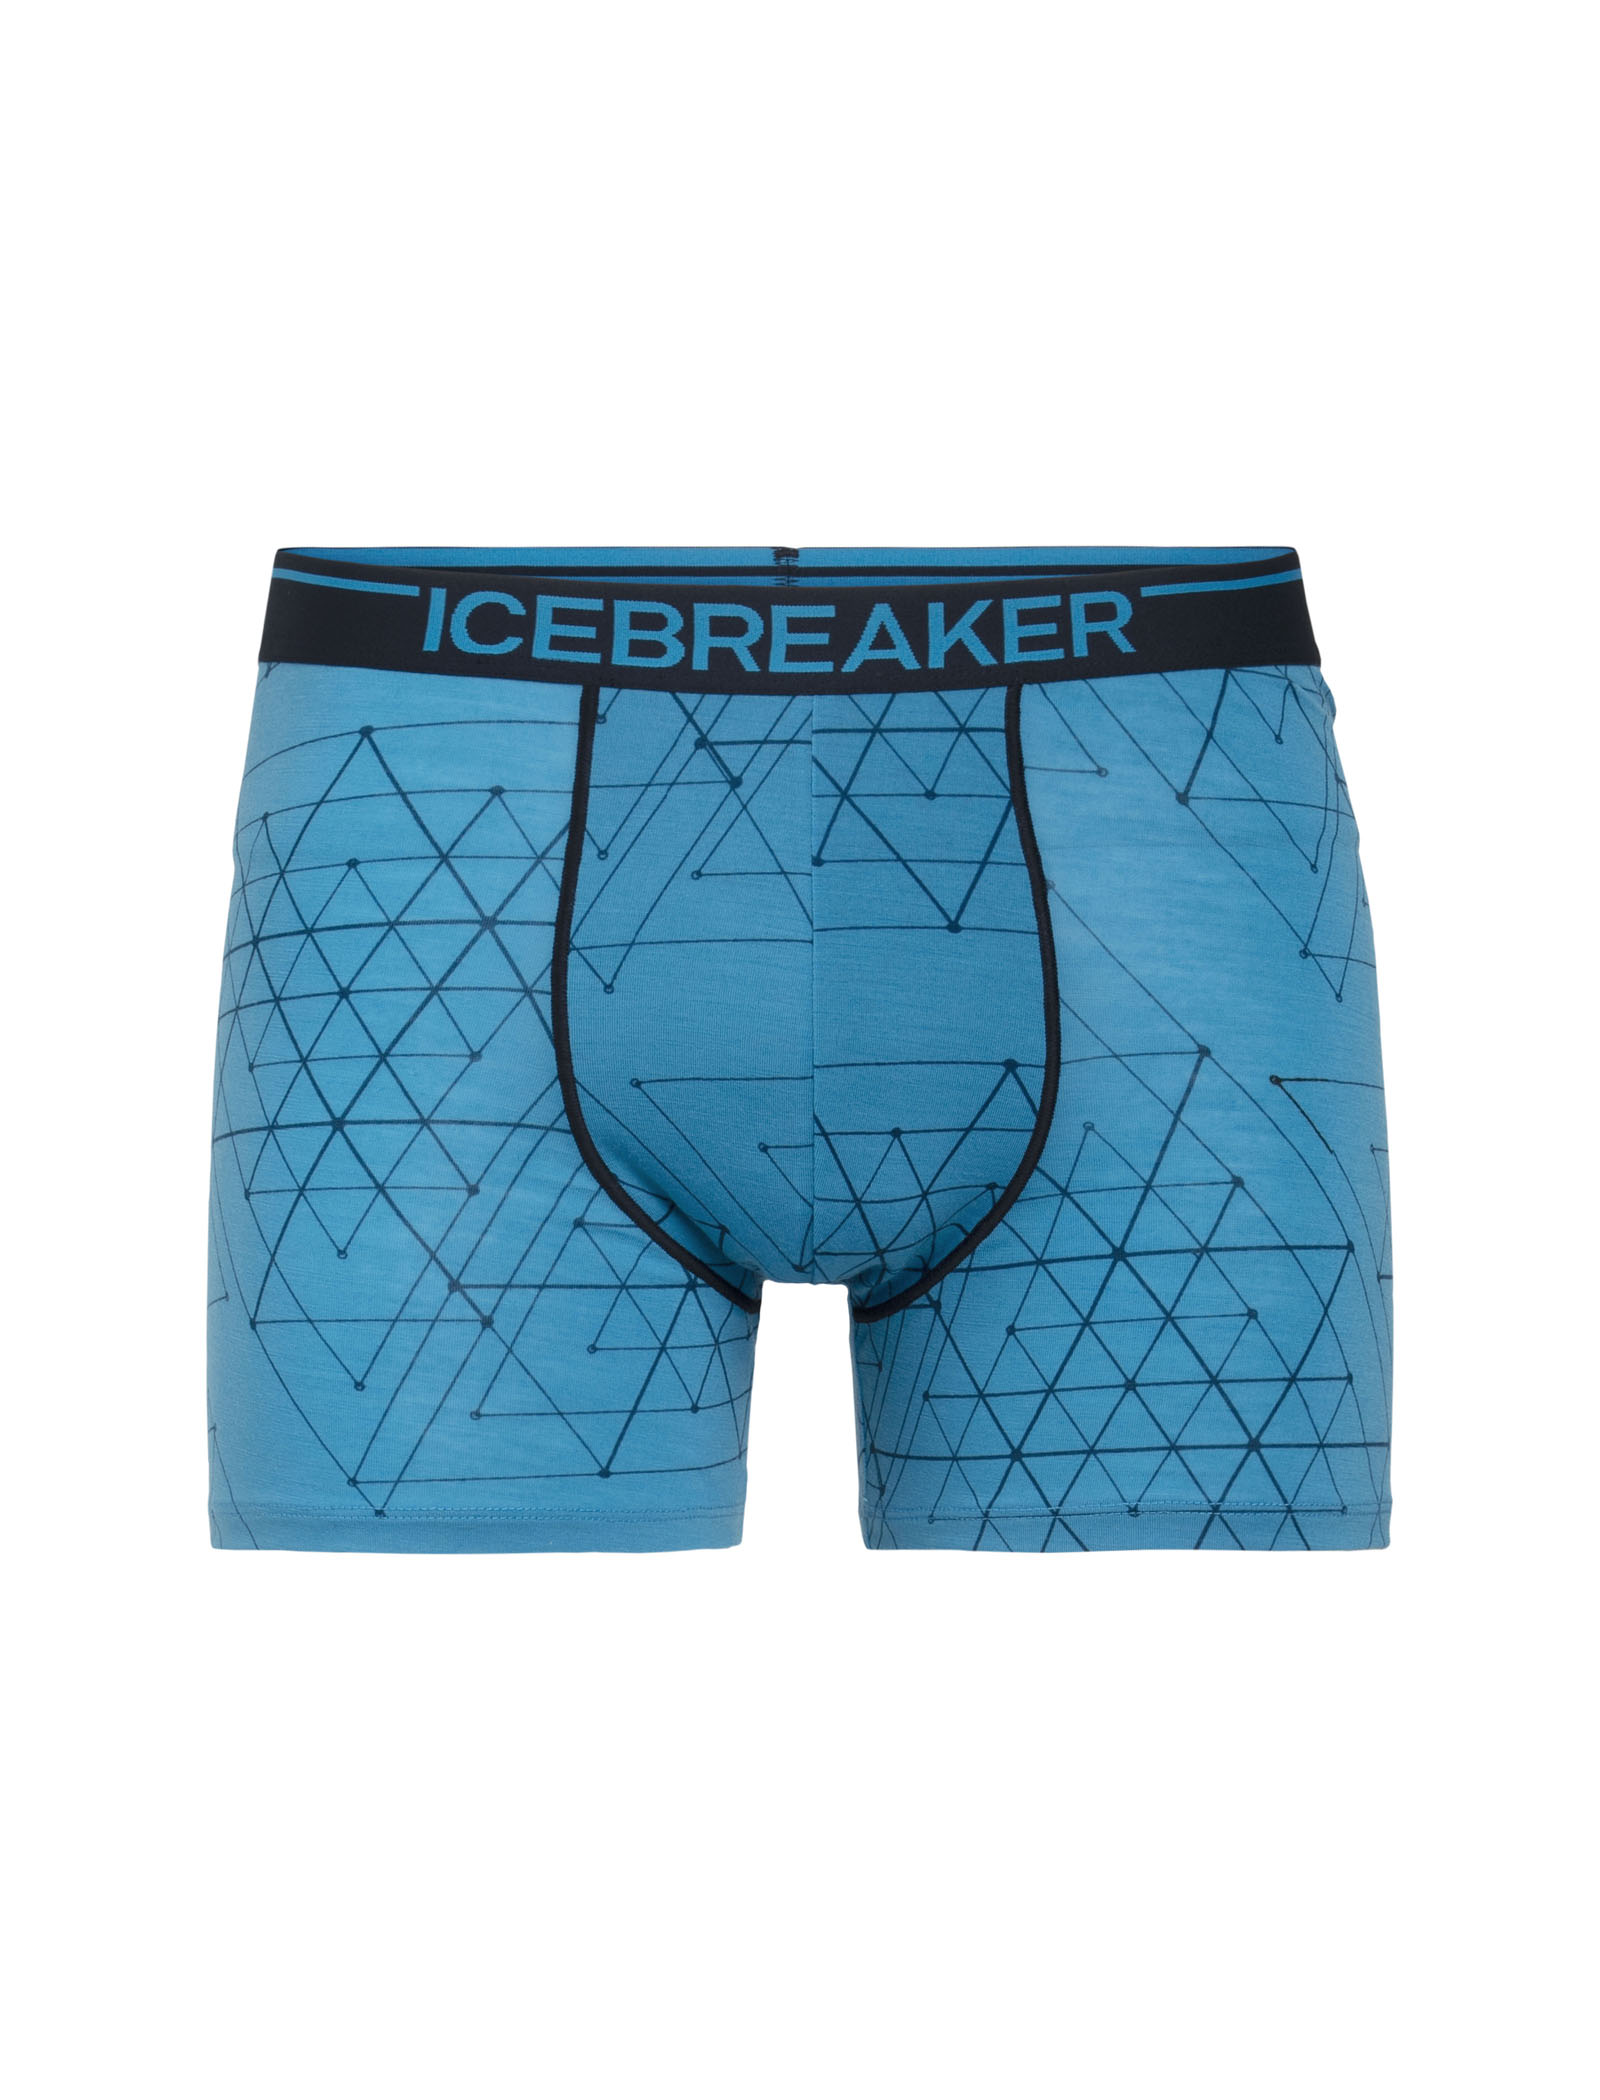 Merino Anatomica Boxers - Icebreaker (UK)